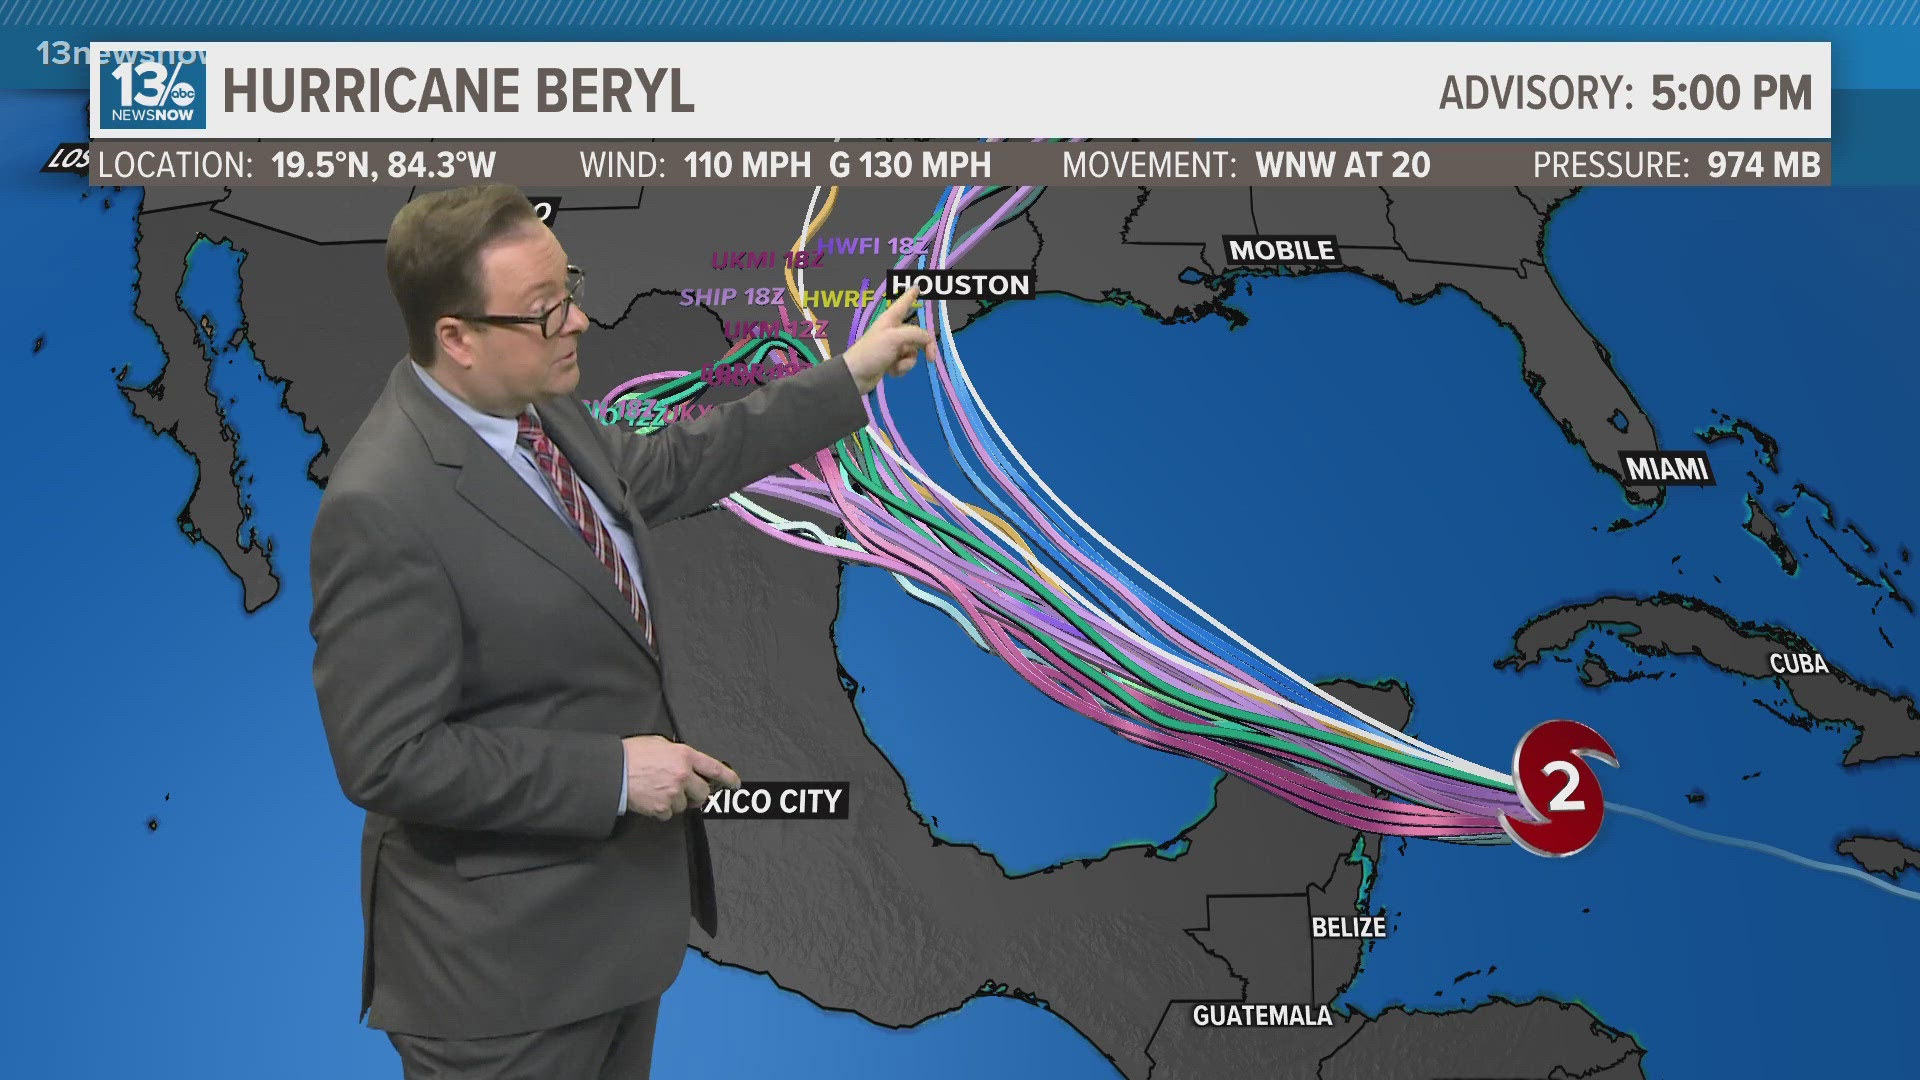 Beryl will impact Mexico's Yucatan Peninsula early Friday morning.